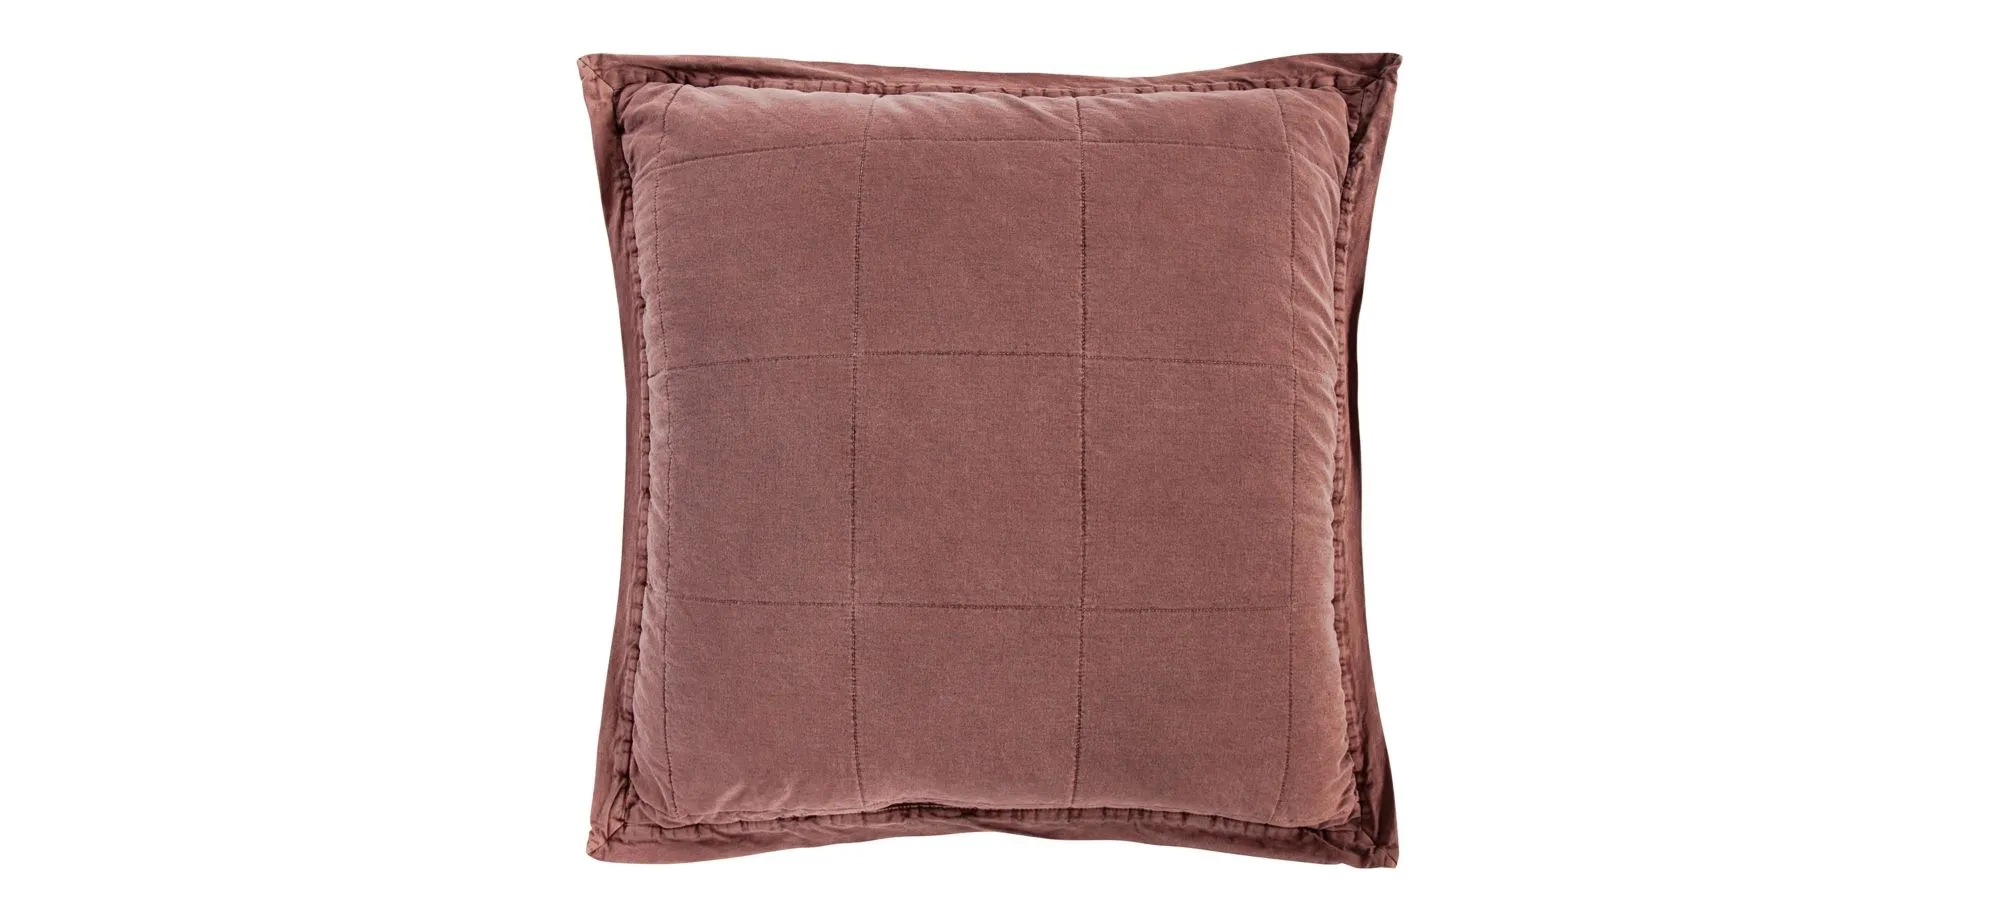 Detwyler Quilted Pillow Sham in Sarsaparilla by HiEnd Accents